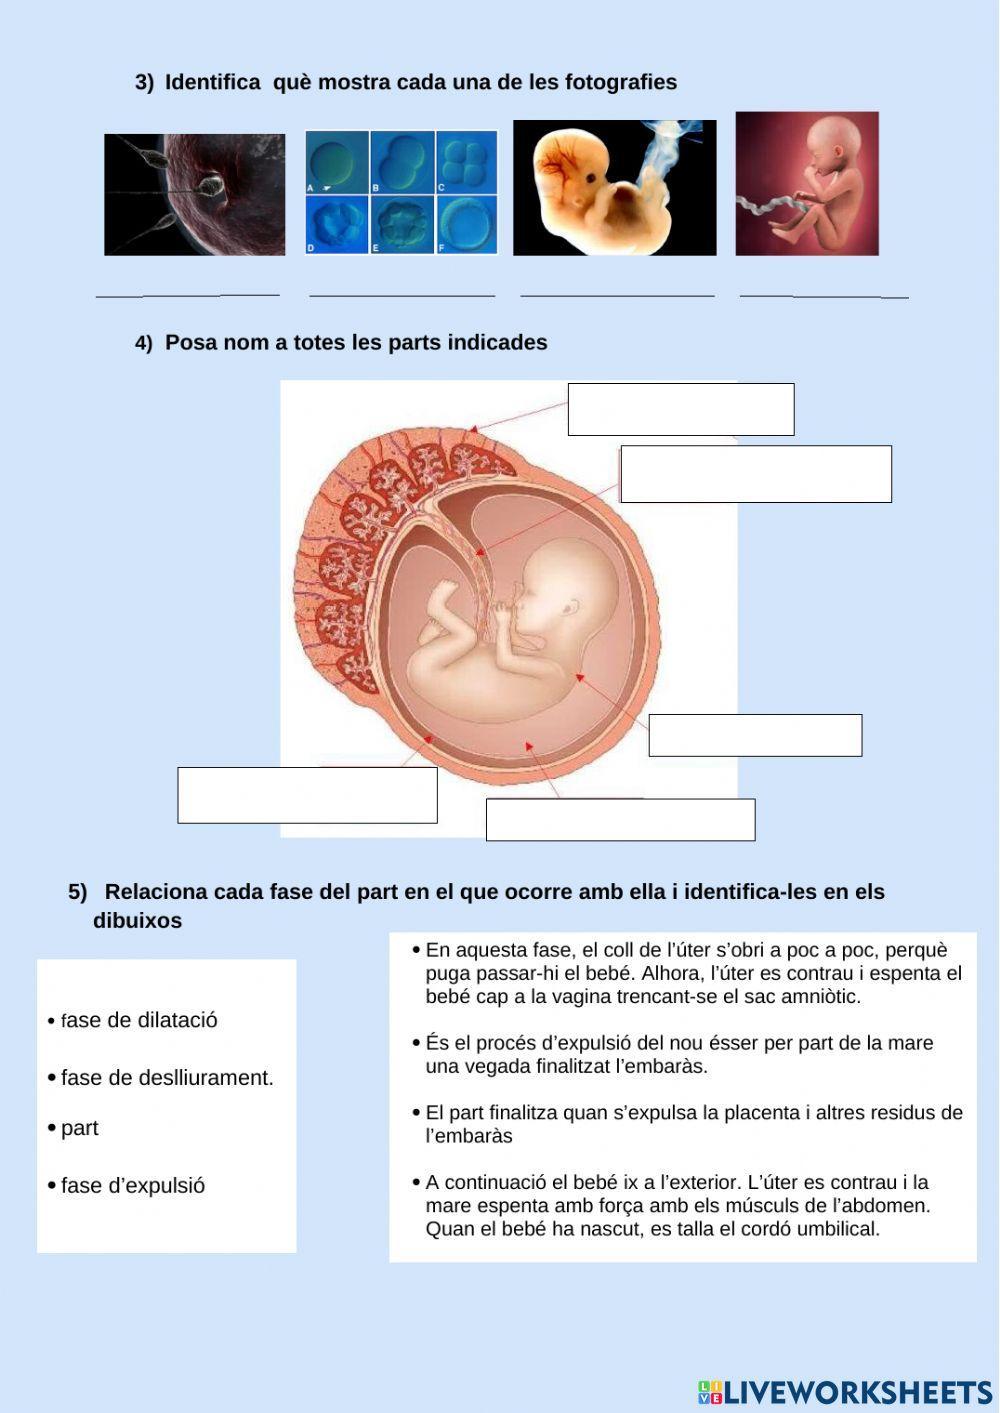 Fecundació, embaràs i part